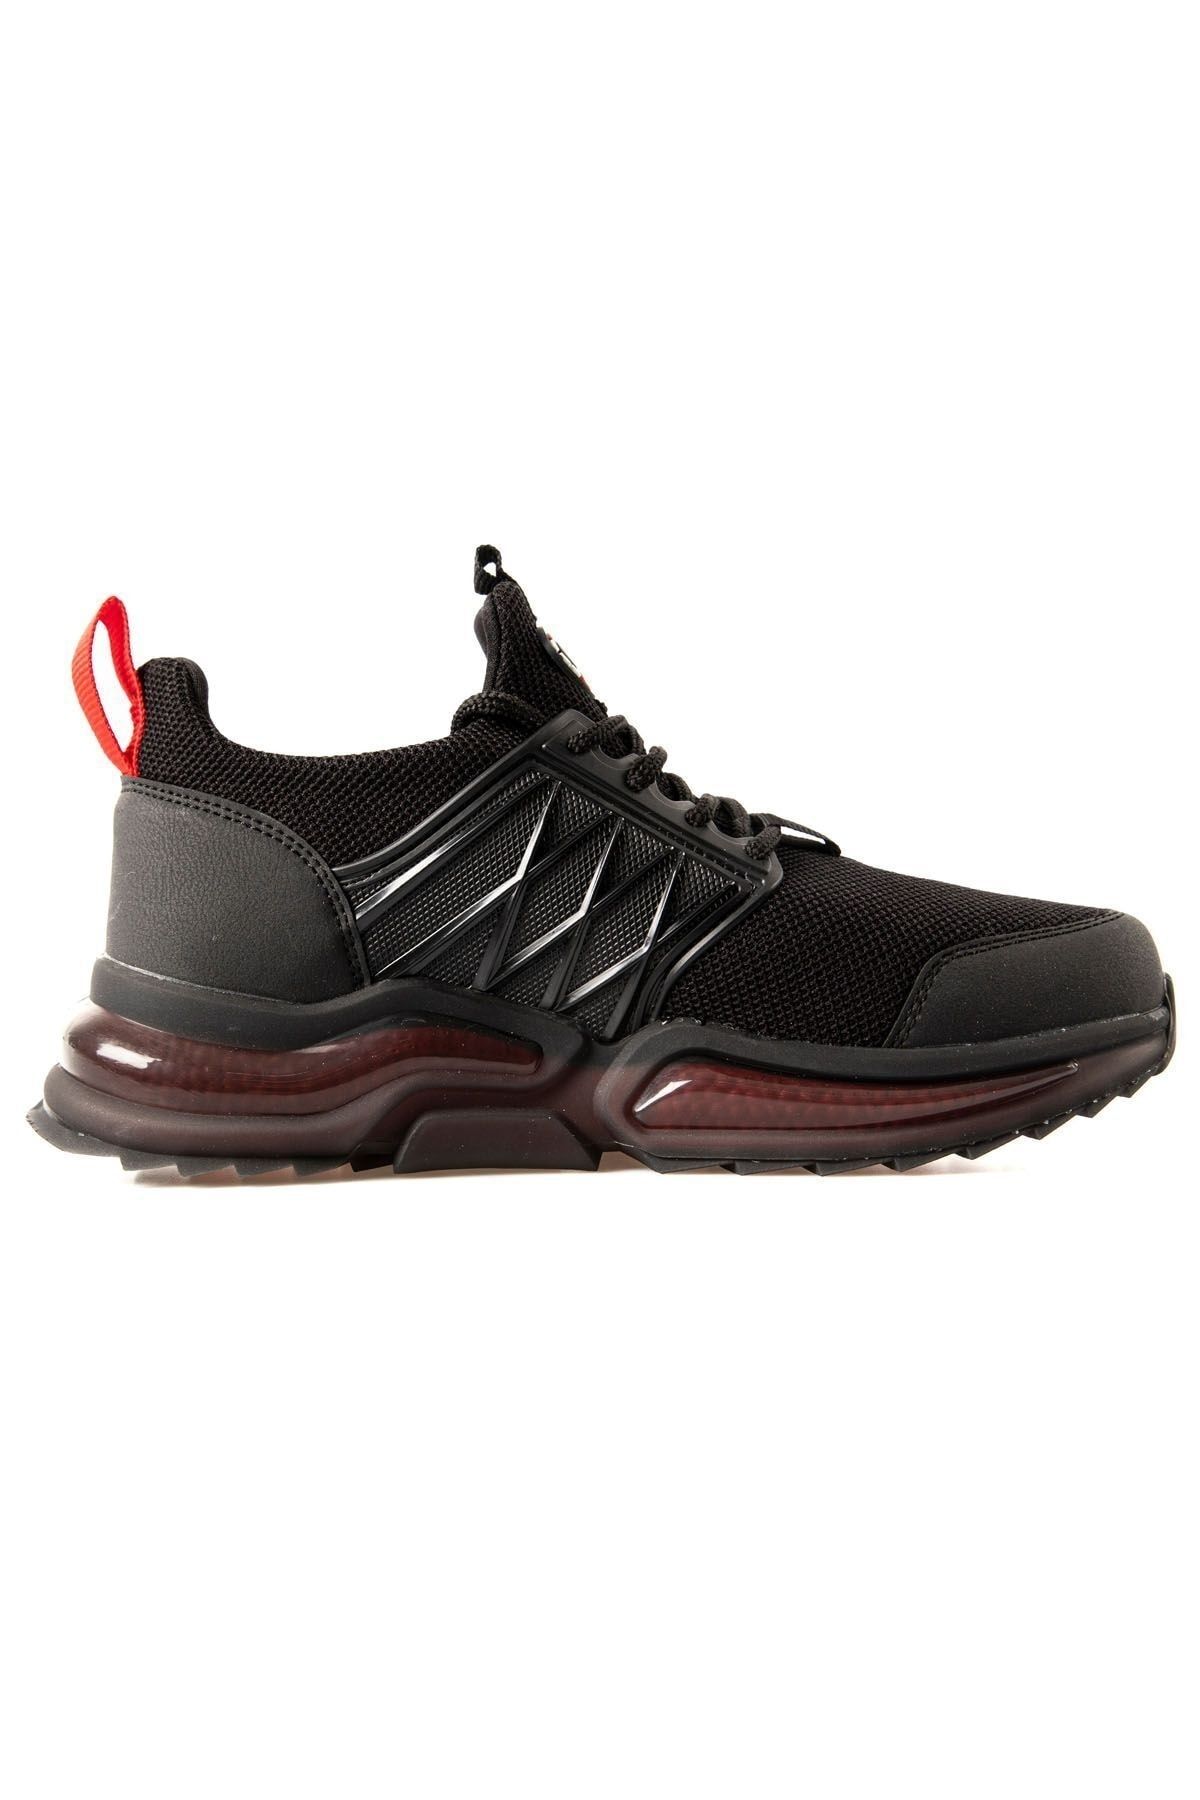 TOMMY LIFE Siyah - Kırmızı Fileli Yüksek Taban Bağcıklı Erkek Spor Ayakkabı - 89108